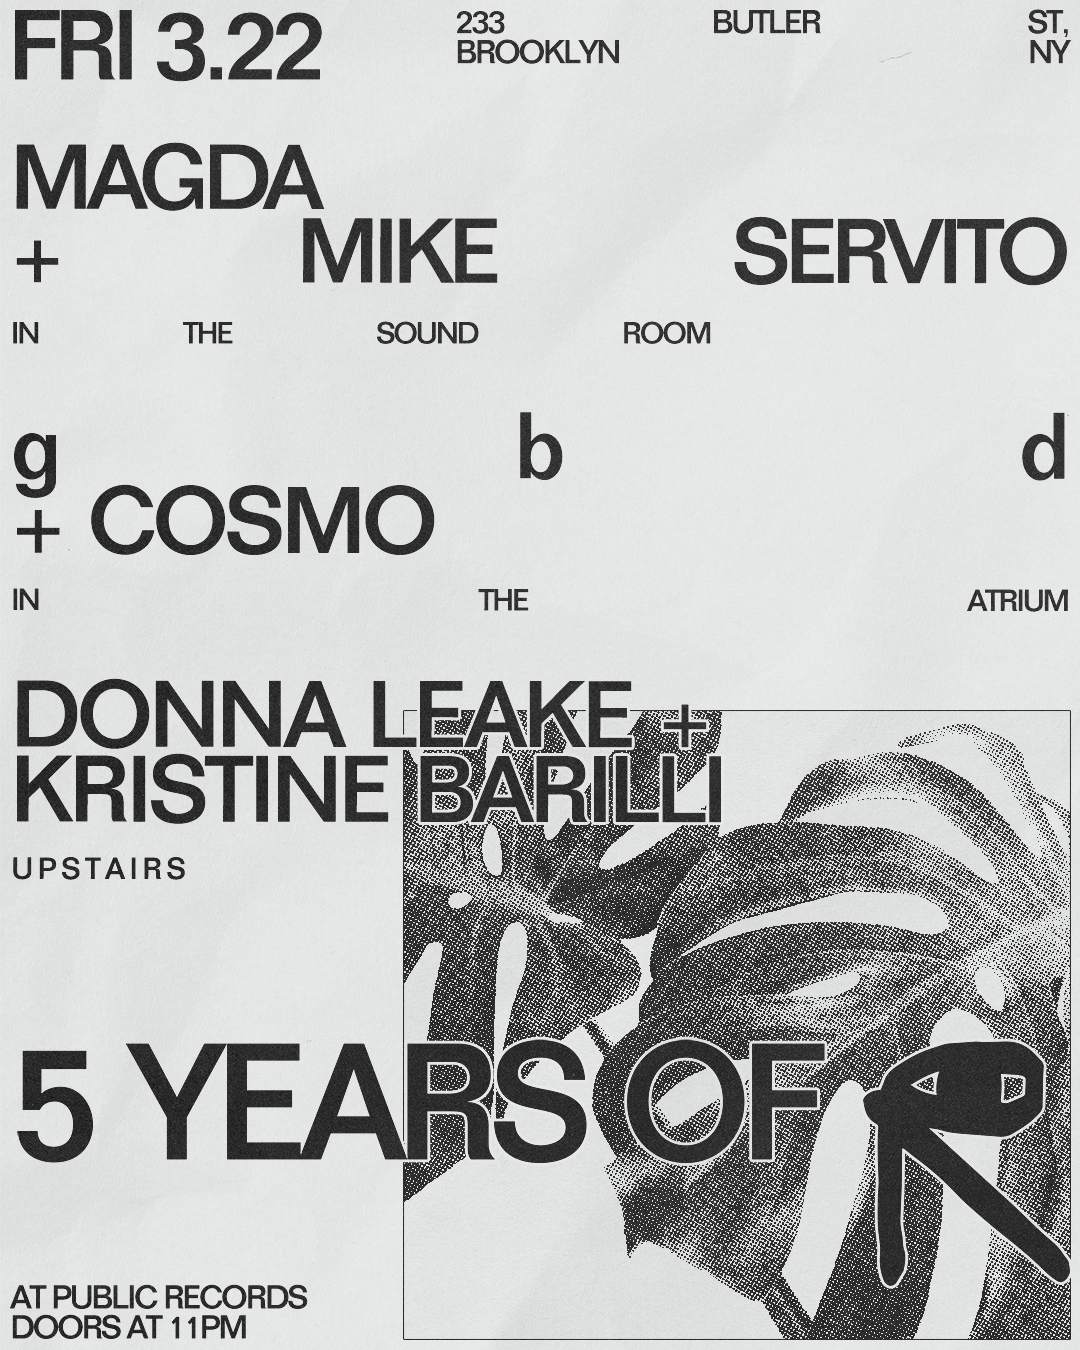 5 Years of PR: Magda + Mike Servito / gbd + Cosmo / Donna Leake + Kristine Barilli - フライヤー表